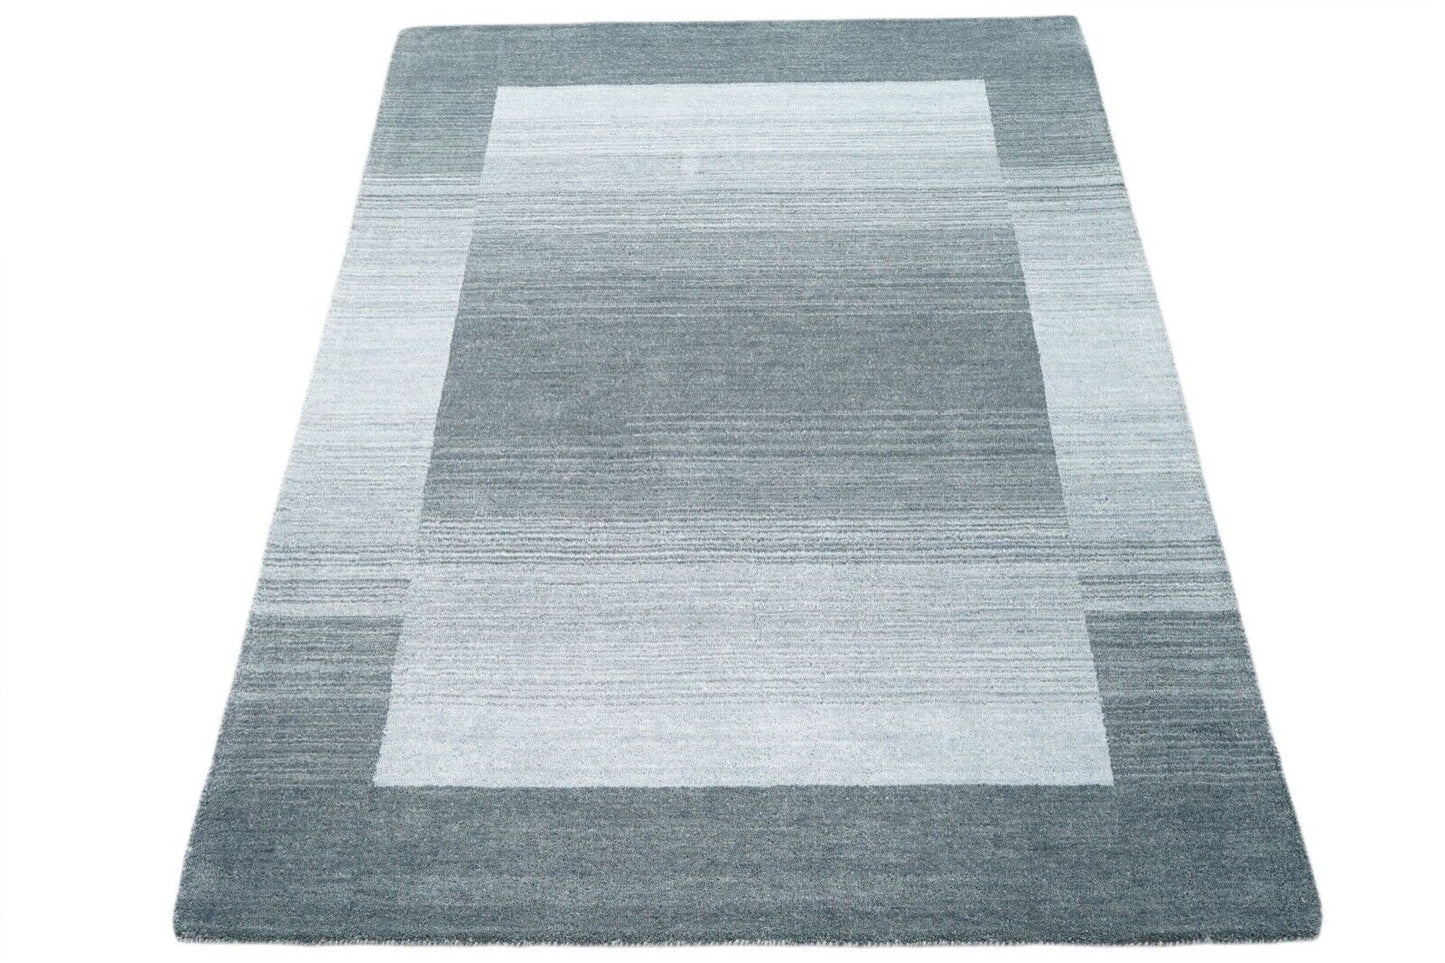 Grau Beige 160X230 cm Teppich 100% Wolle Orientteppich Handgetuftet HT187